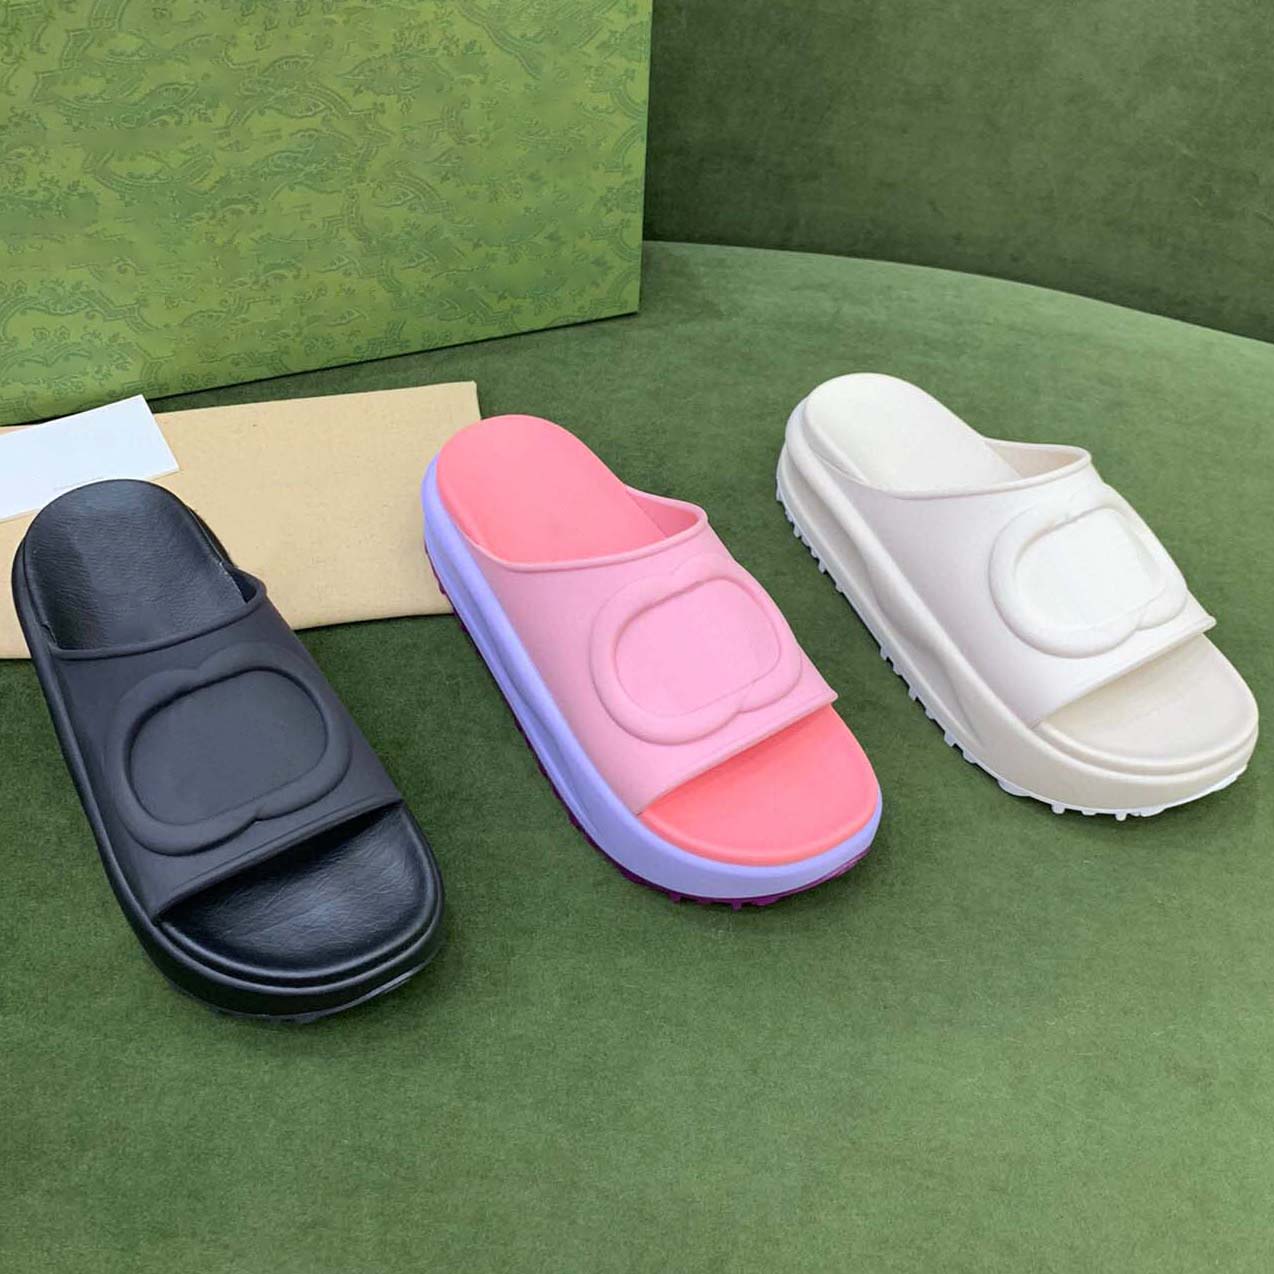 

2022 New style Slippers Sandal Sliders Macaron thick bottom non-slip soft bottom fashion G house slipper women wear beach flip-flops INS, #37